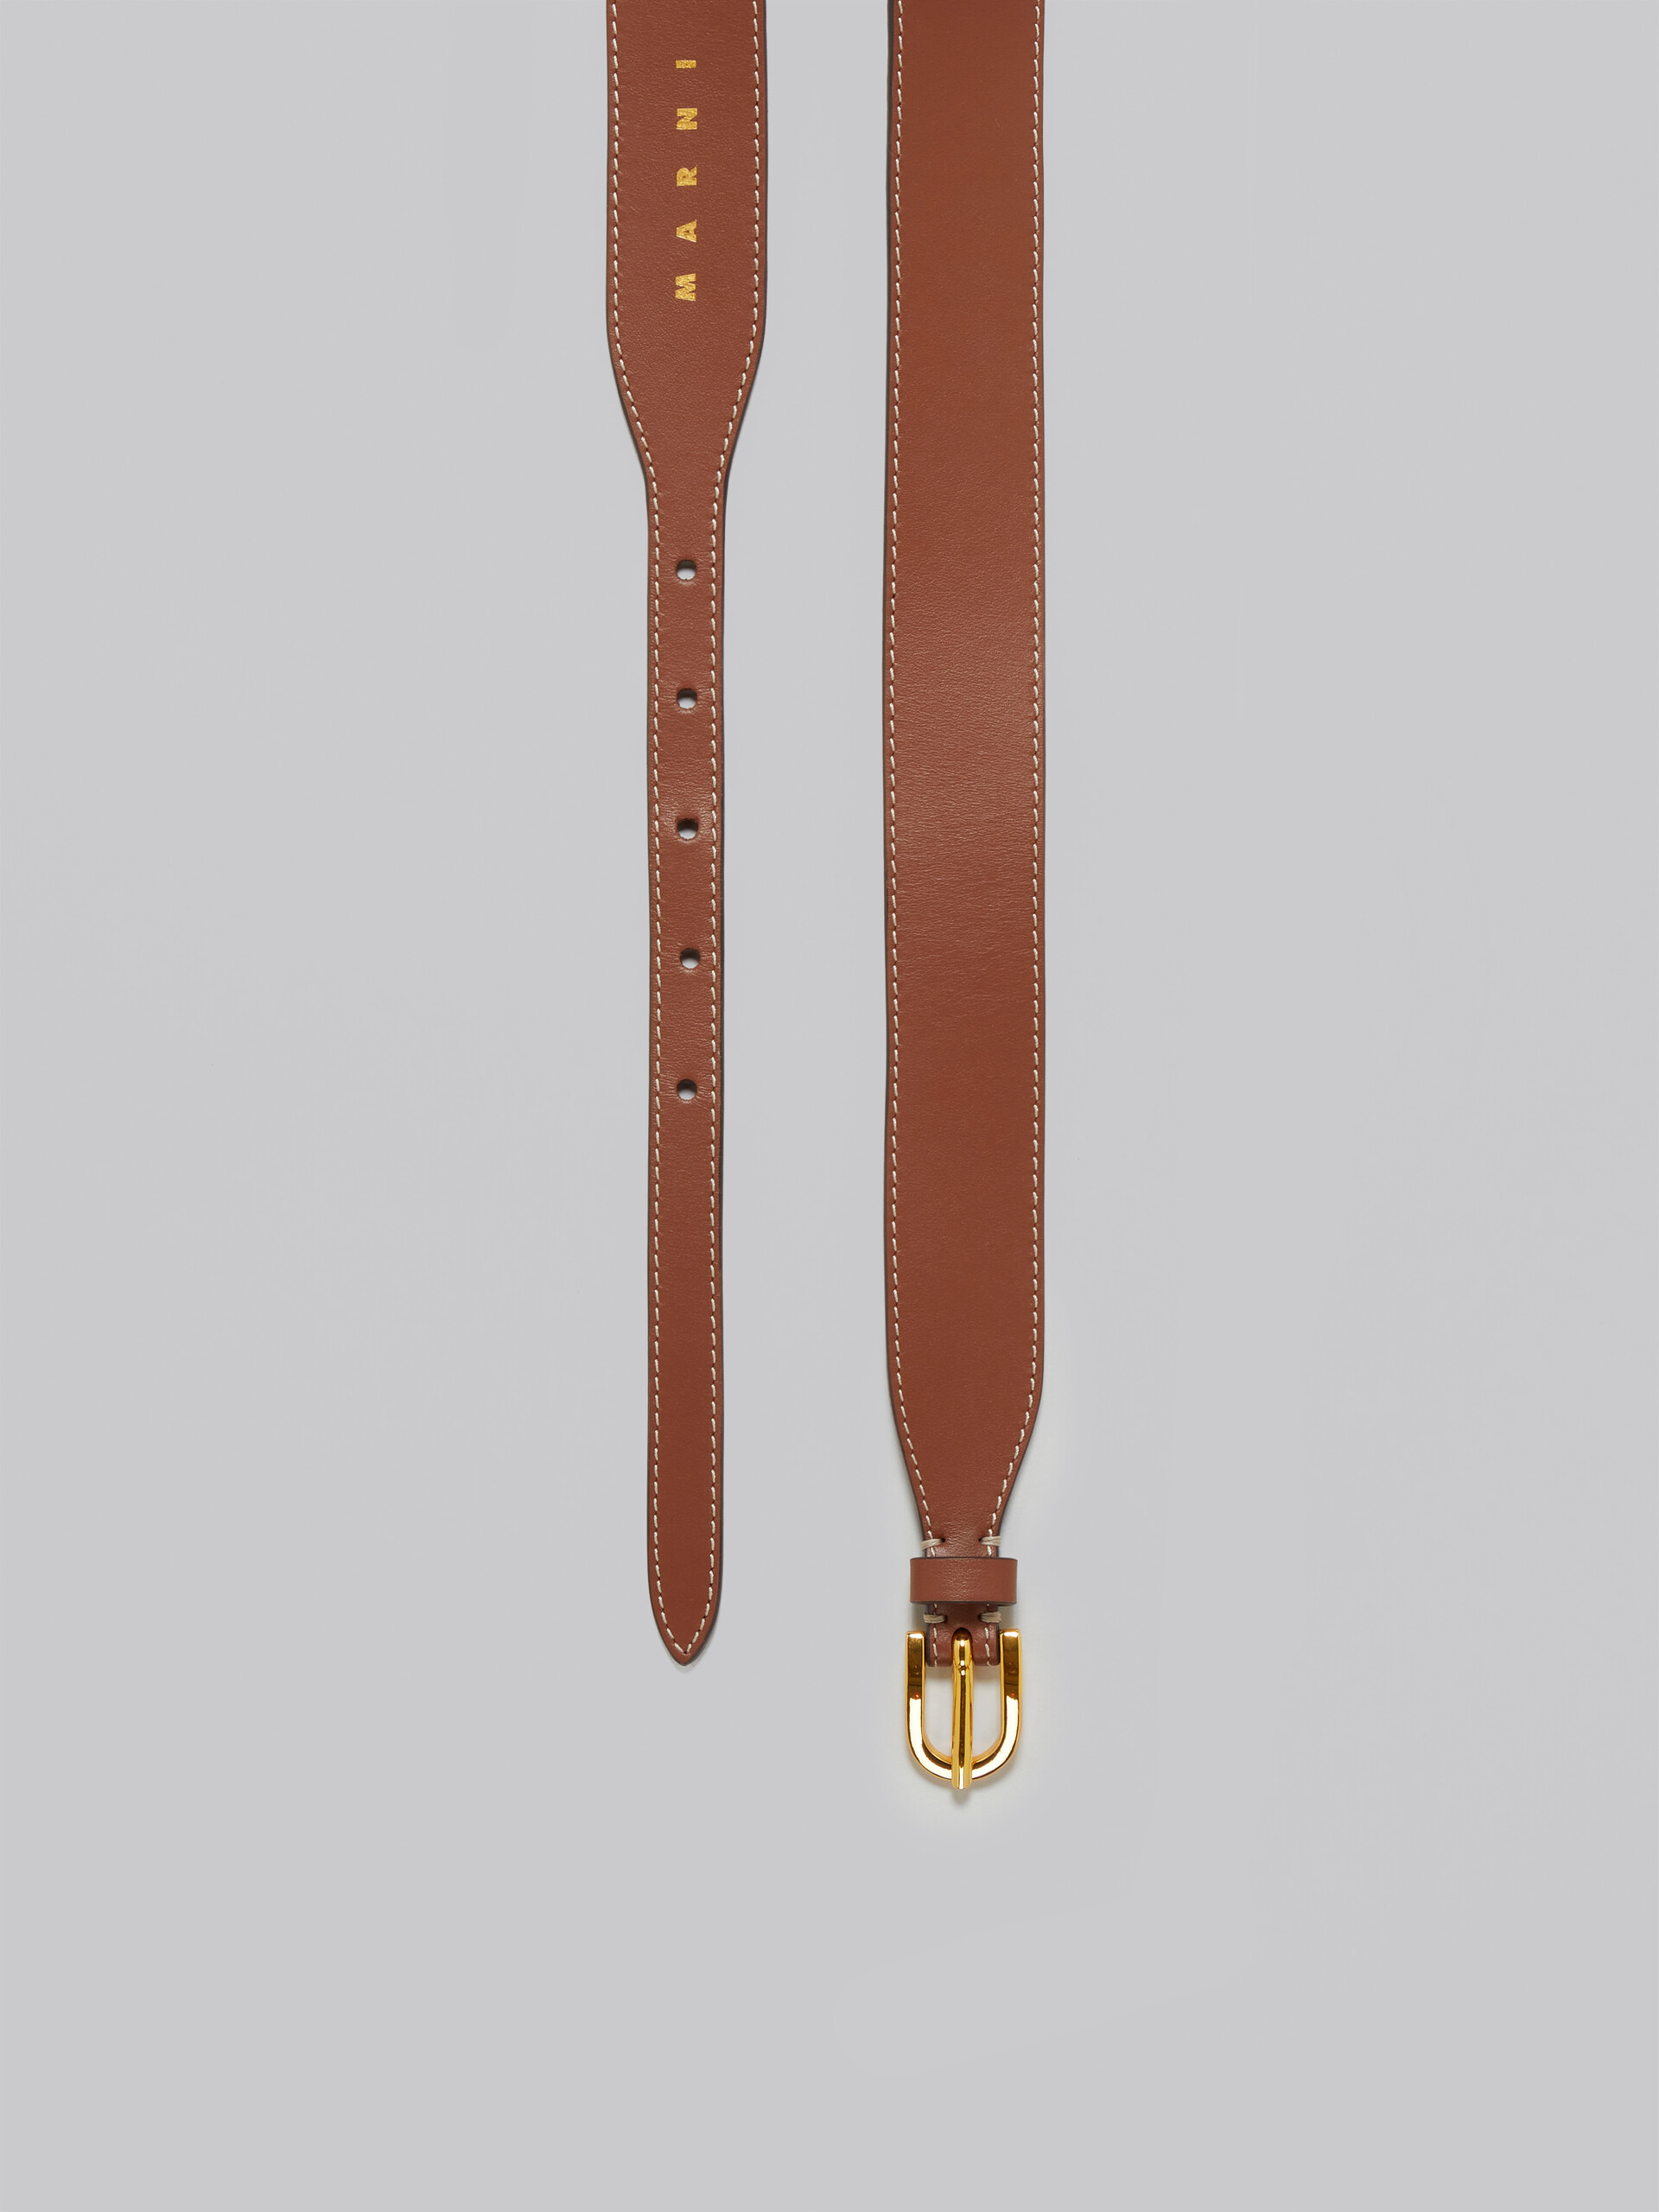 Cinturón de piel marrón - Cinturones - Image 4